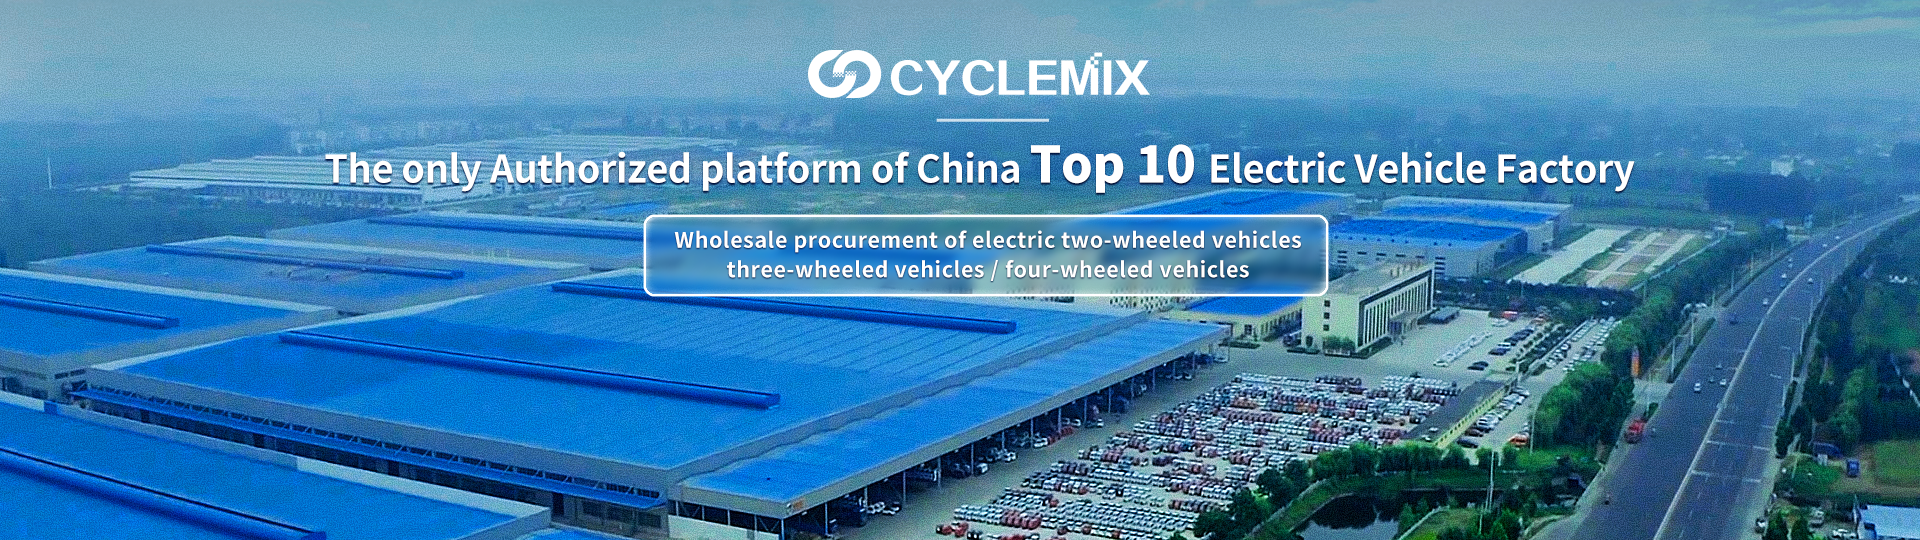 CYCLEMIX บุคคล / แพลตฟอร์มที่ได้รับอนุญาตแห่งเดียวของโรงงานผลิตรถยนต์ไฟฟ้า 10 อันดับแรกของจีน